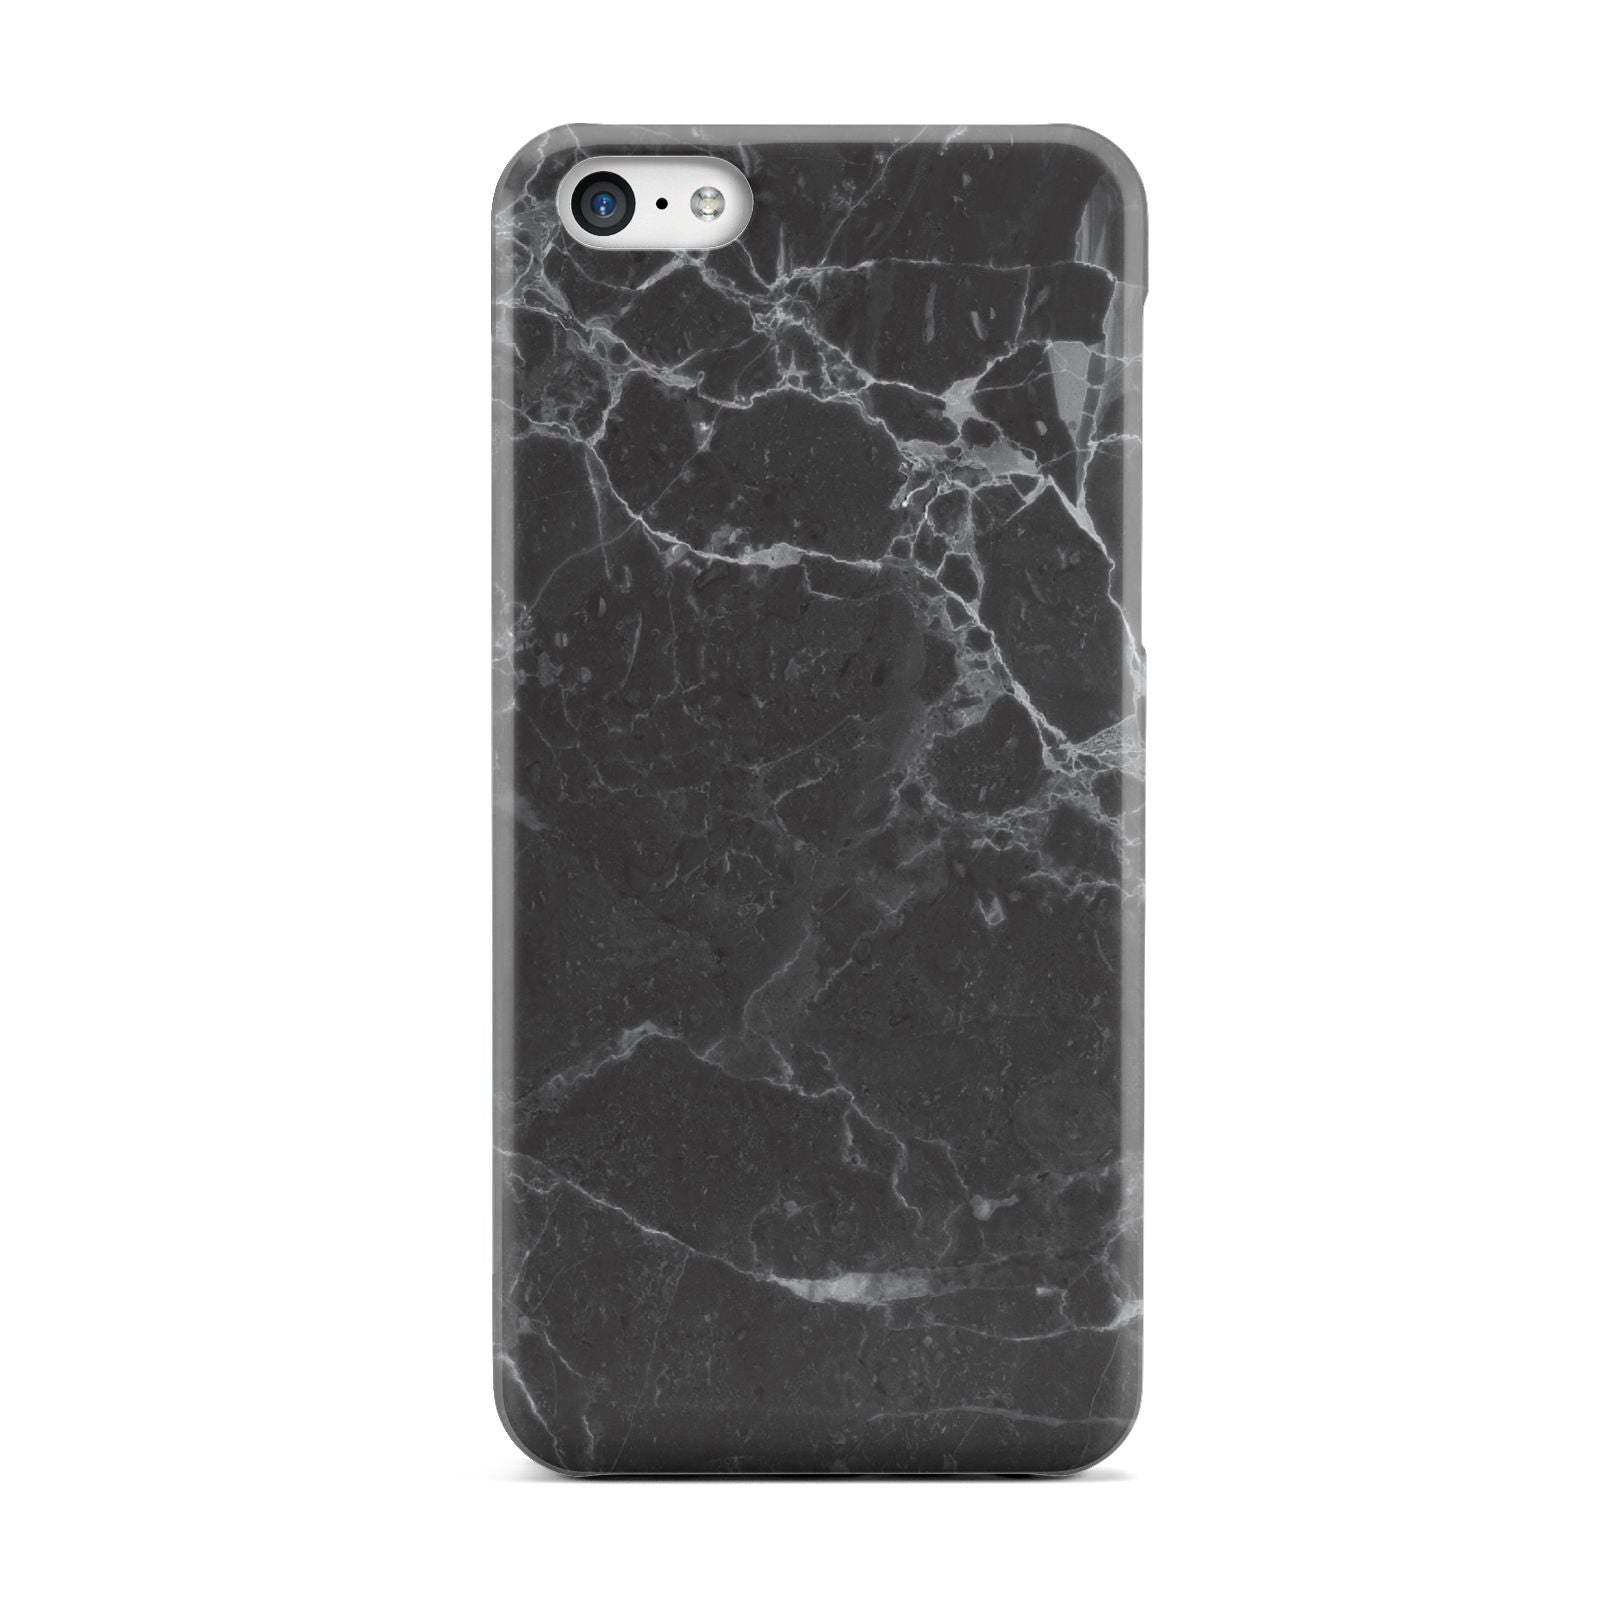 Faux Marble Effect Black Apple iPhone 5c Case